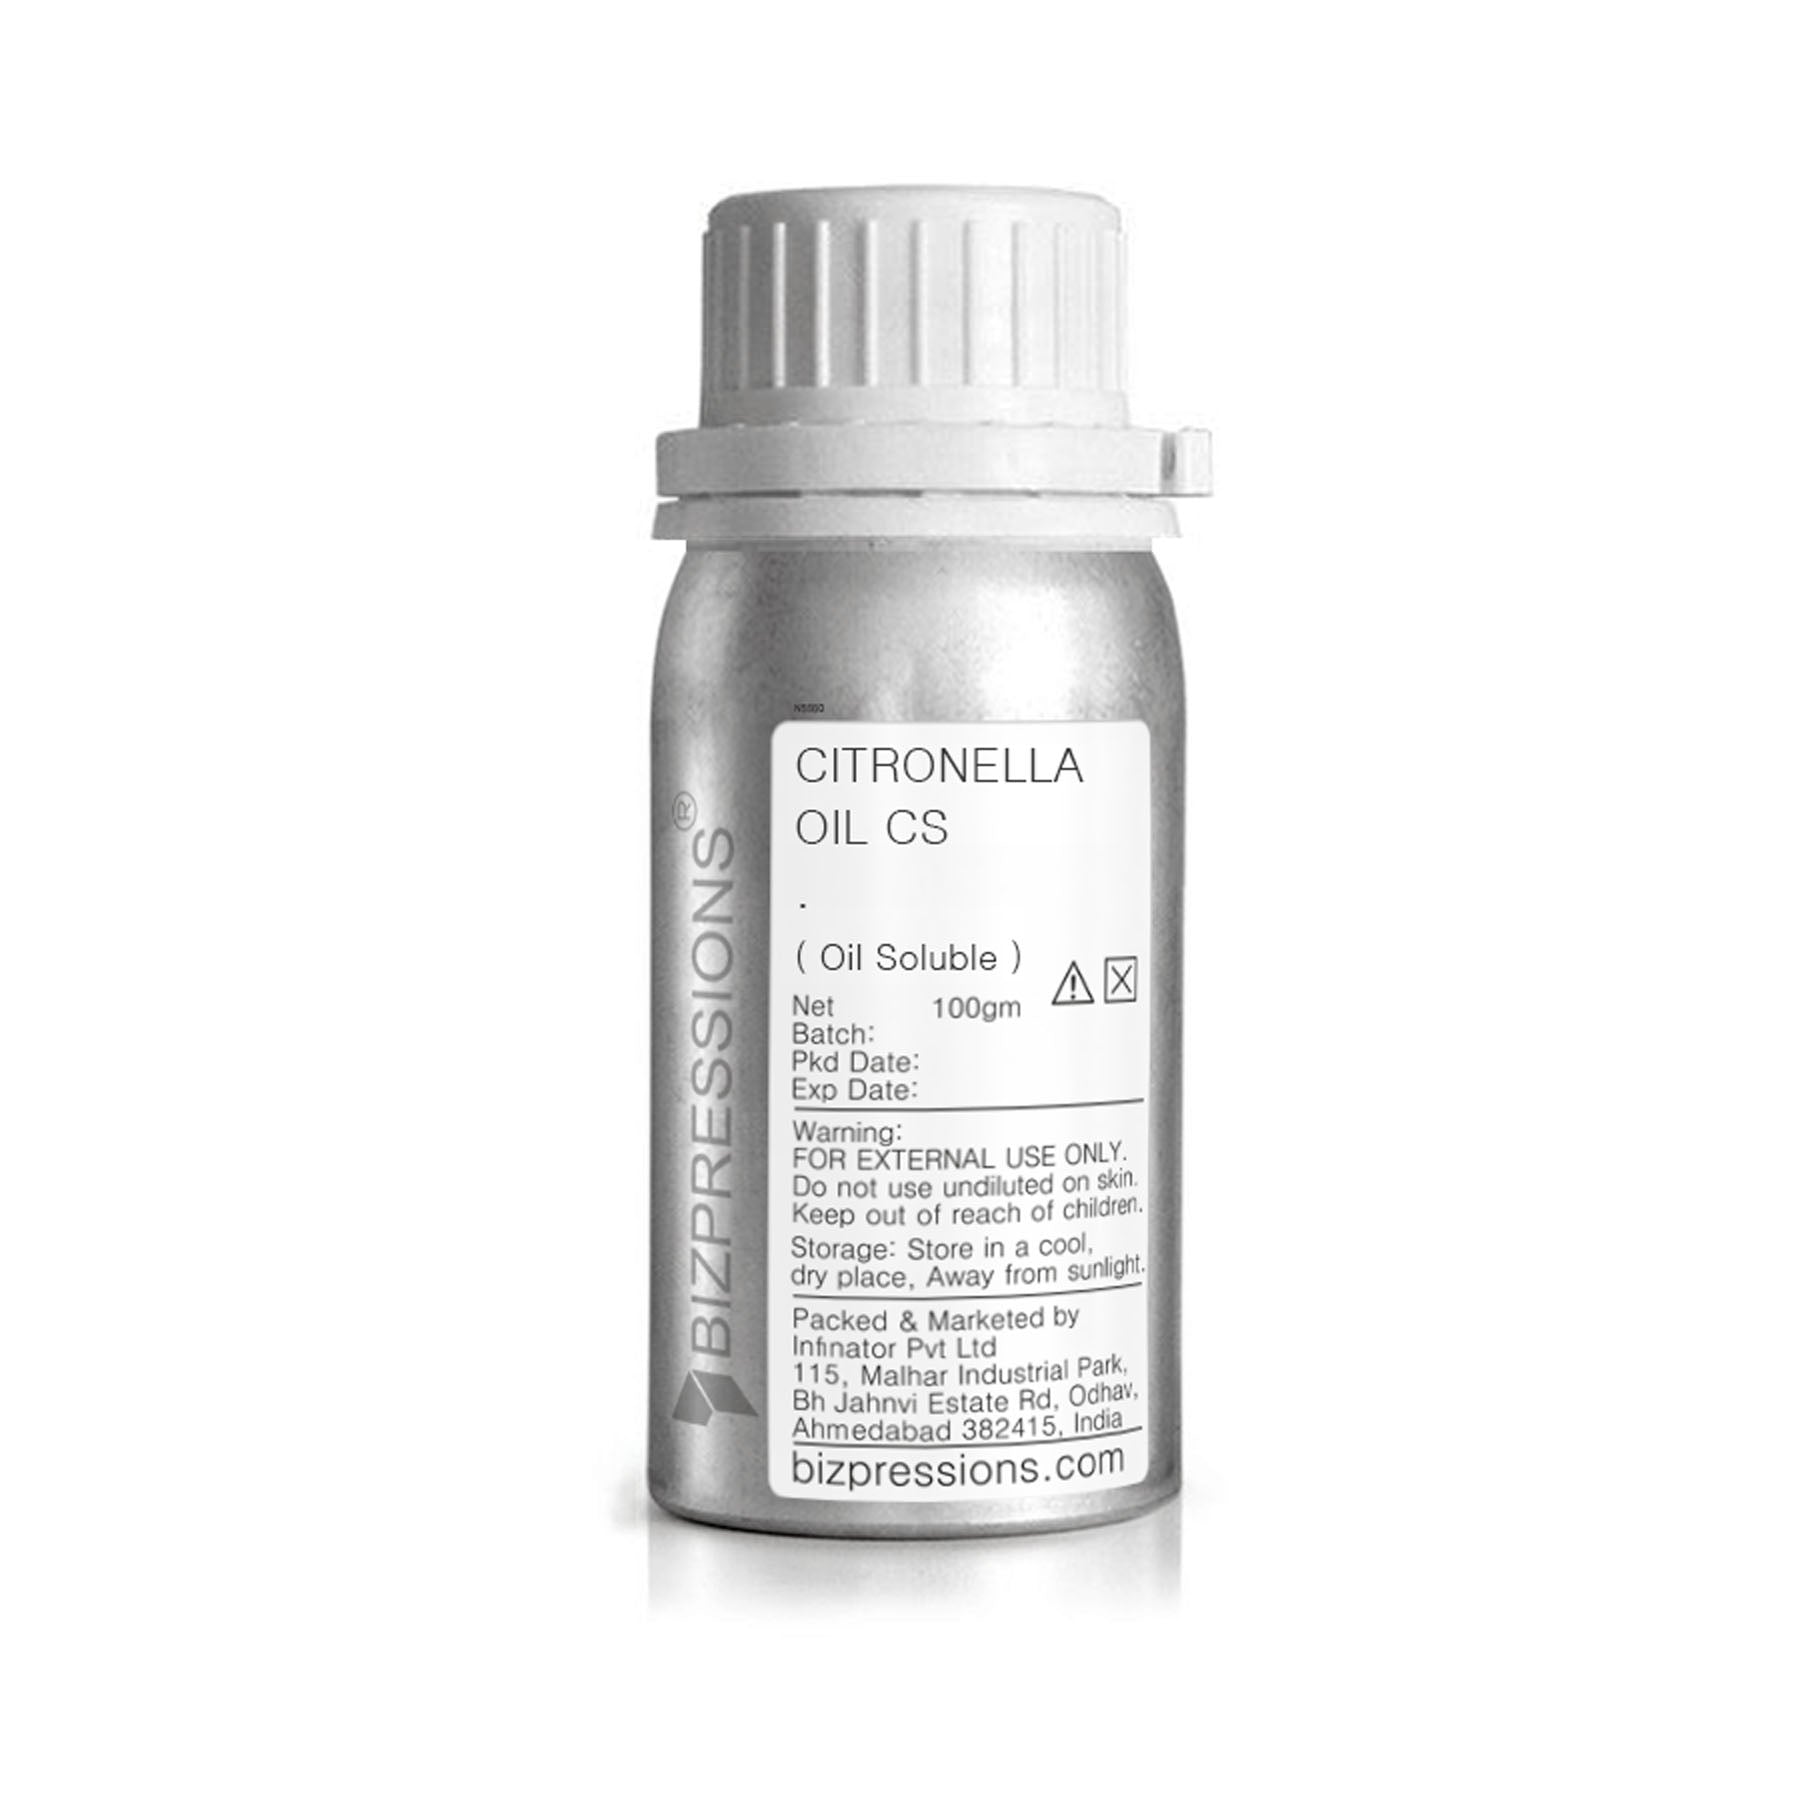 CITRONELLA OIL CS - Fragrance ( Oil Soluble ) - 100 gm